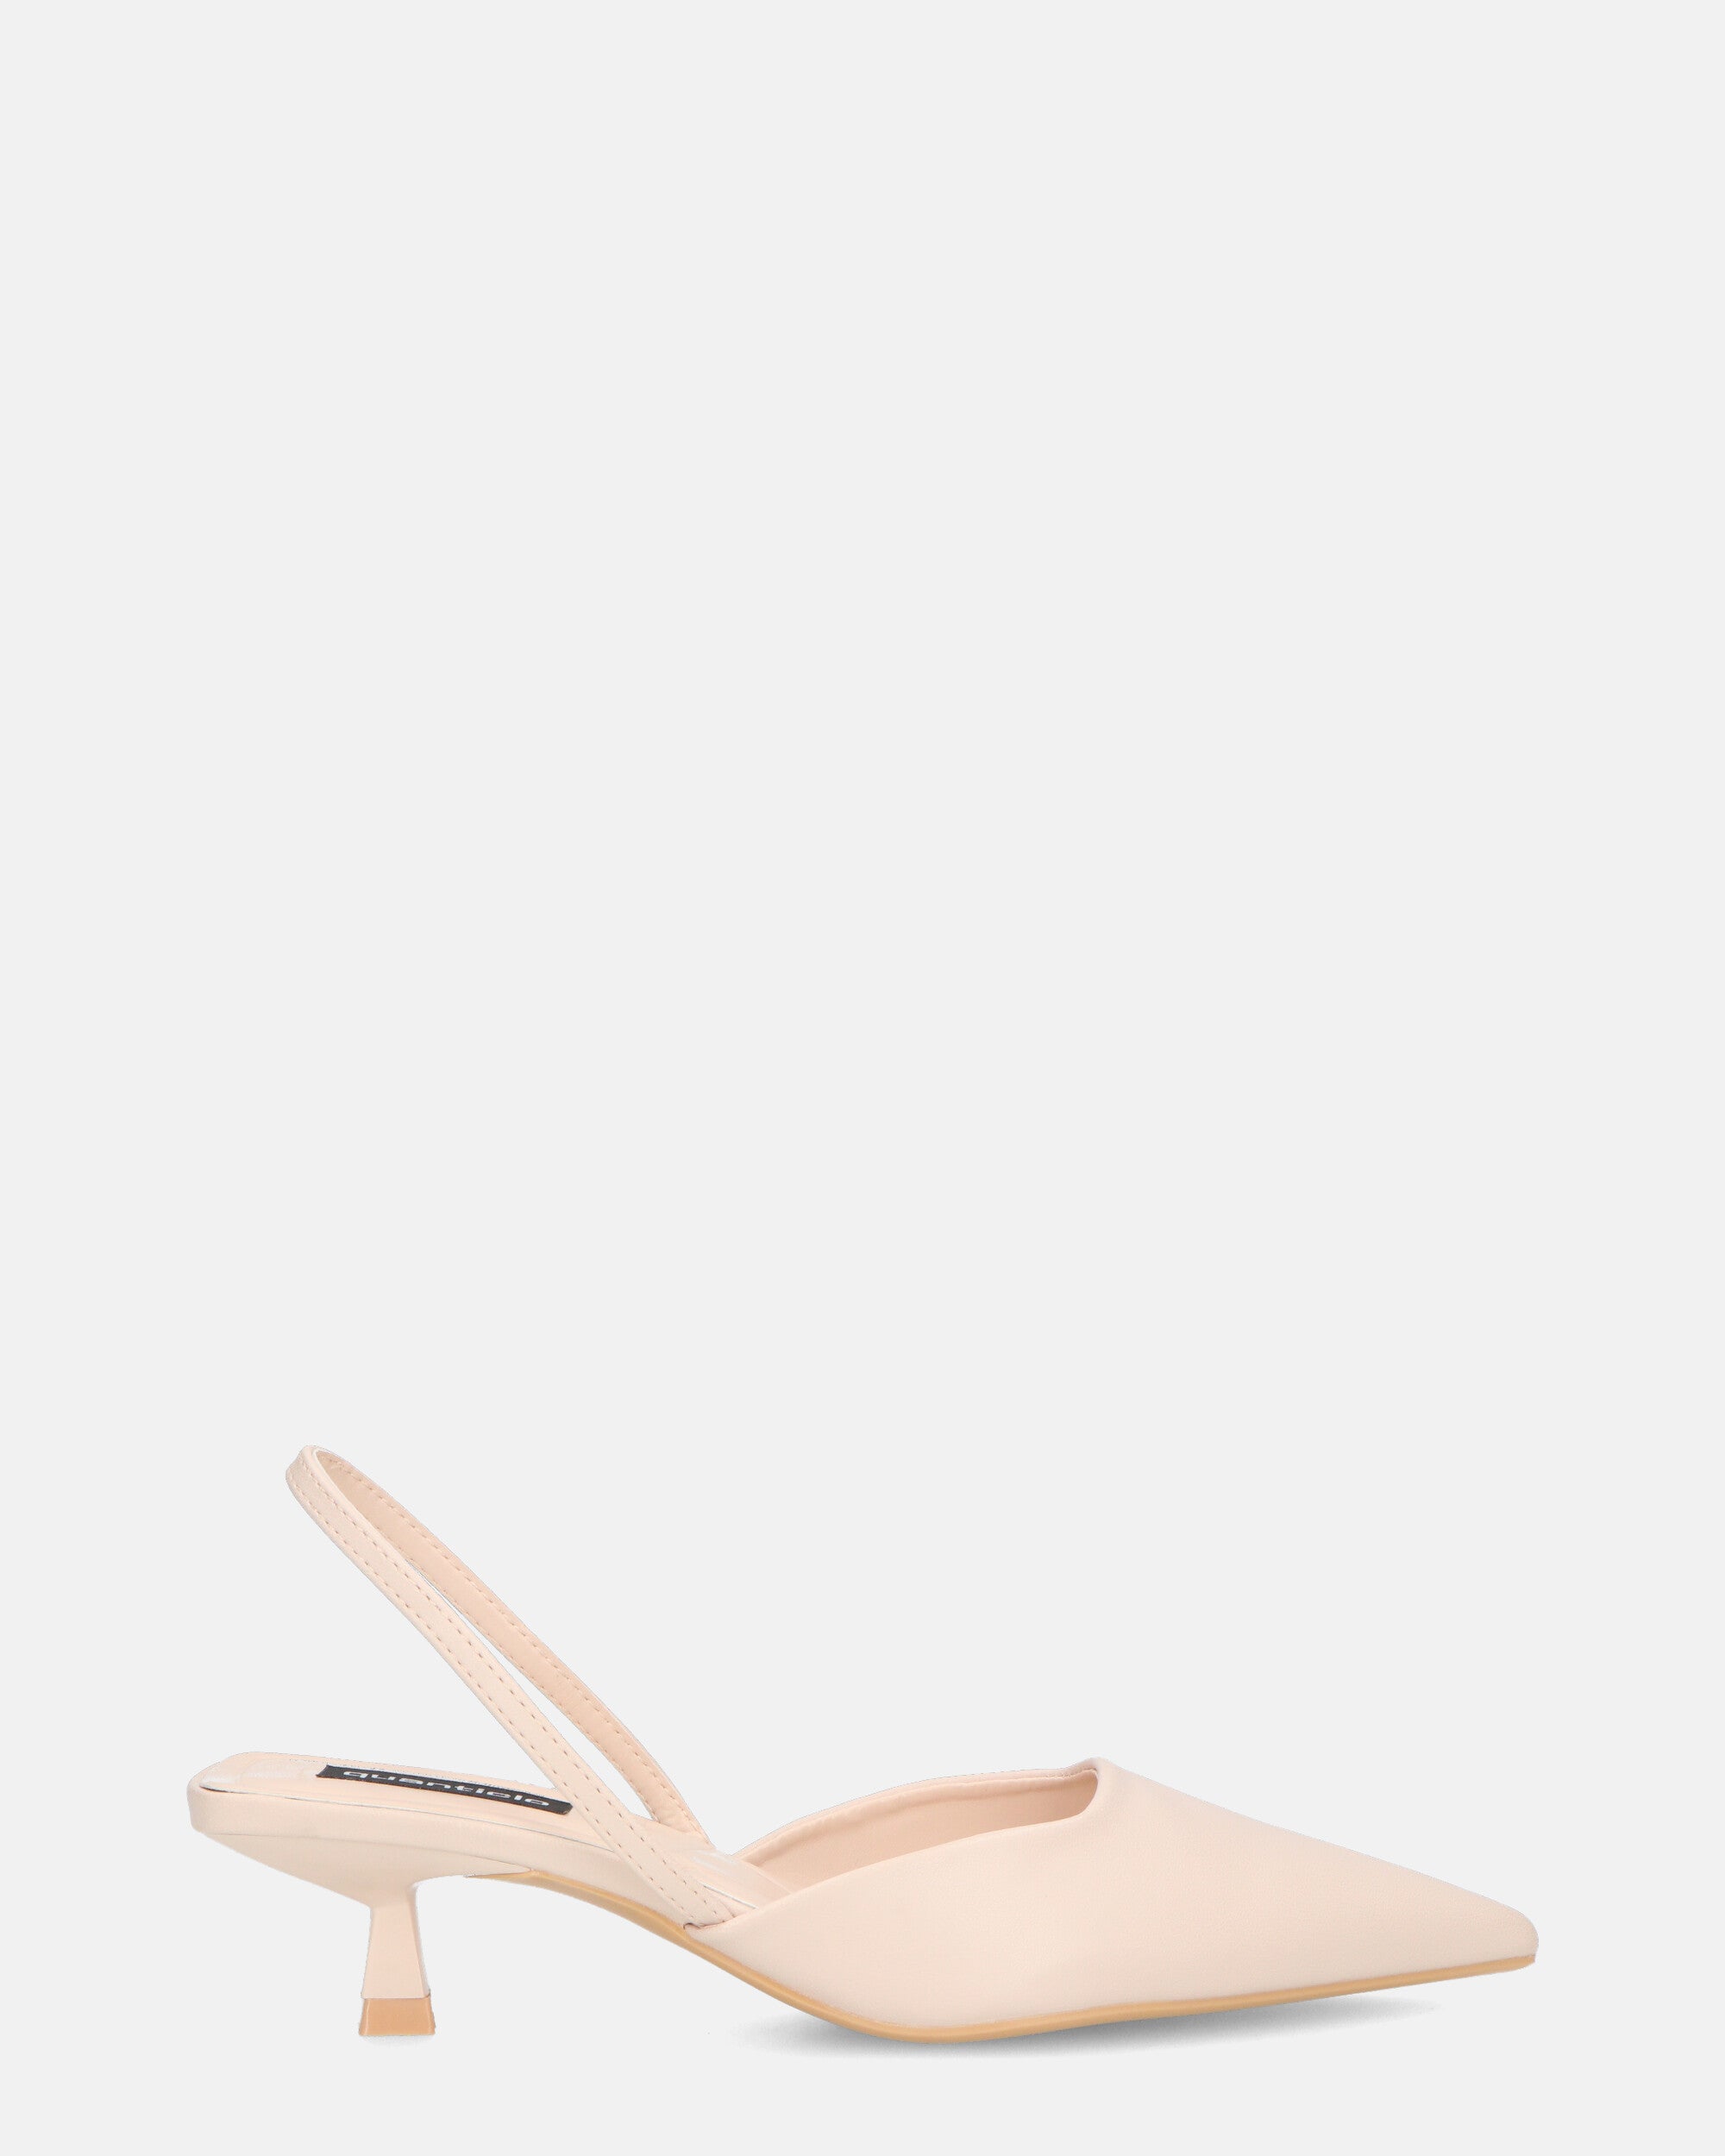 NIEVES - beige slingback shoes with kitten heels